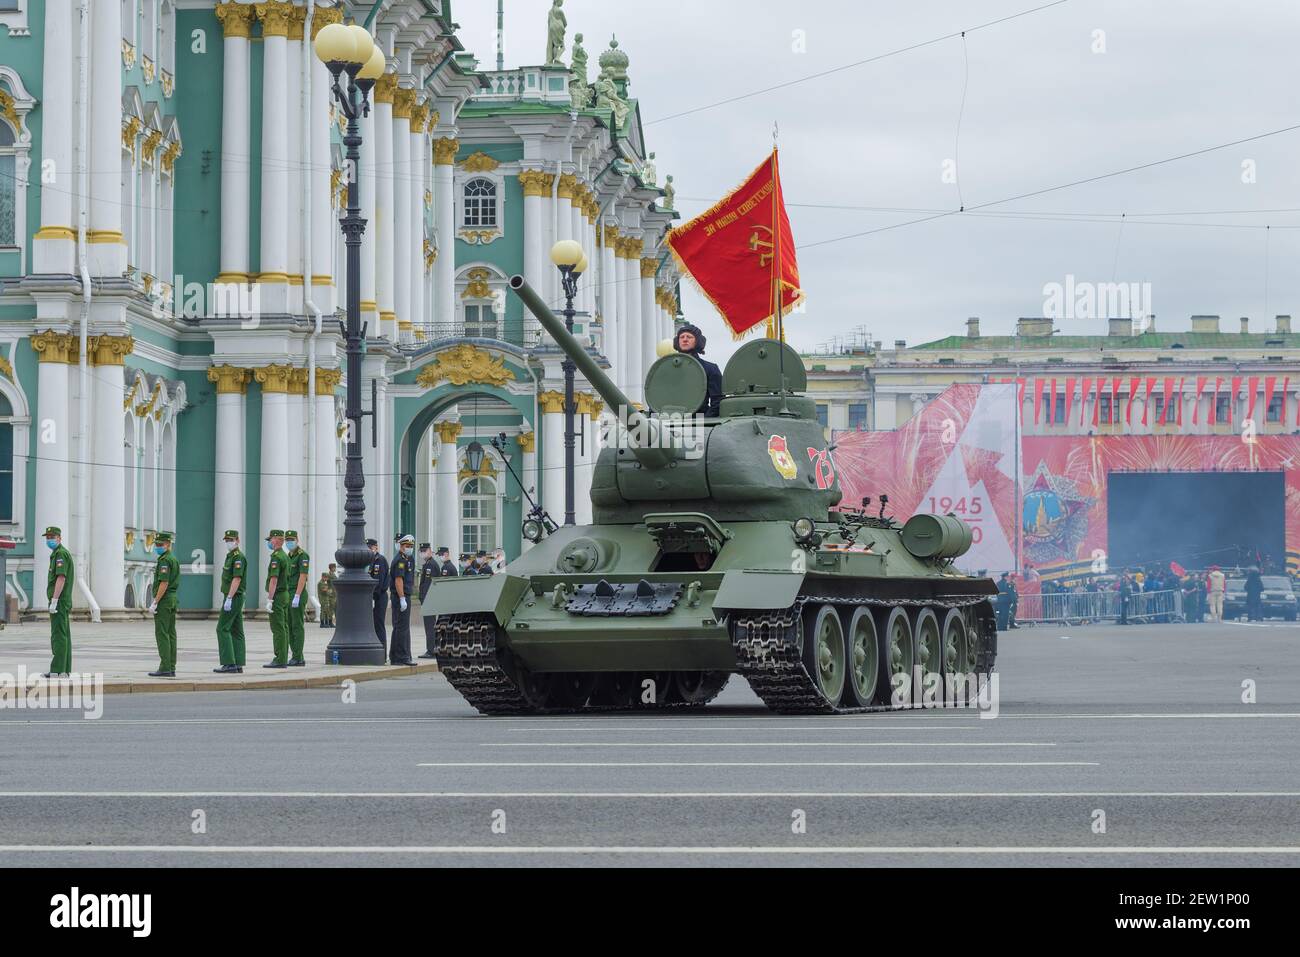 SANKT PETERSBURG, RUSSLAND - 20. JUNI 2020: Sowjetischer Panzer während des Großen Vaterländischen Krieges - T-34 auf der Probe der Militärparade zu Ehren Wiktors Stockfoto